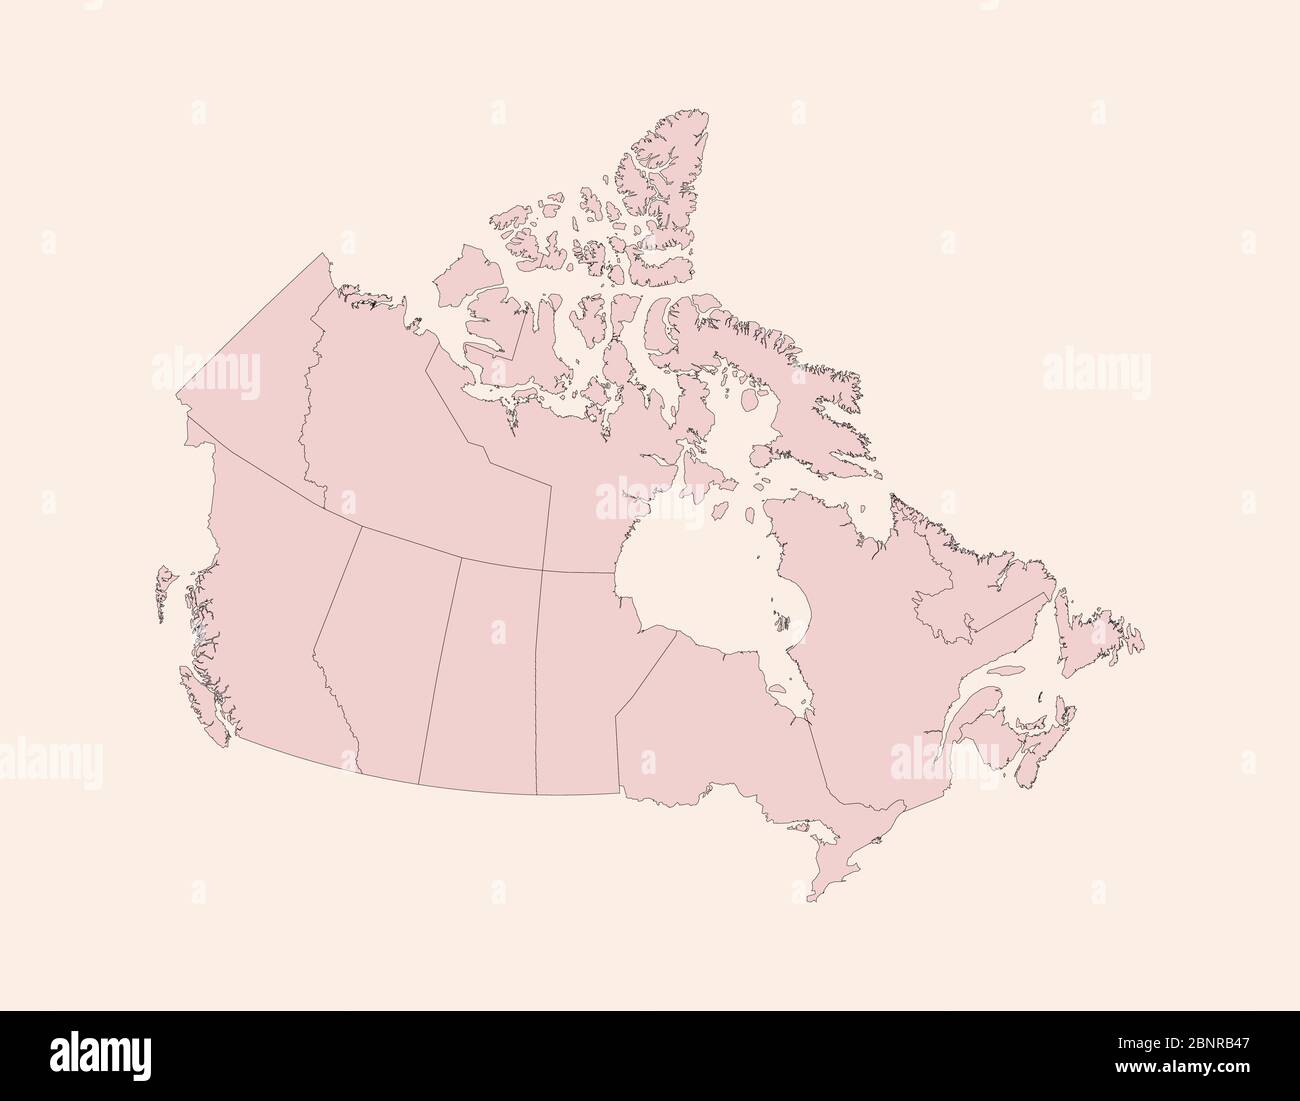 Kanada-Karte mit Provinzen. Vintage rosa Schatten Hintergrund Vektor. Perfekt für Geschäftskonzepte, Hintergründe, Hintergrund, Banner, Poster, Aufkleber Stock Vektor